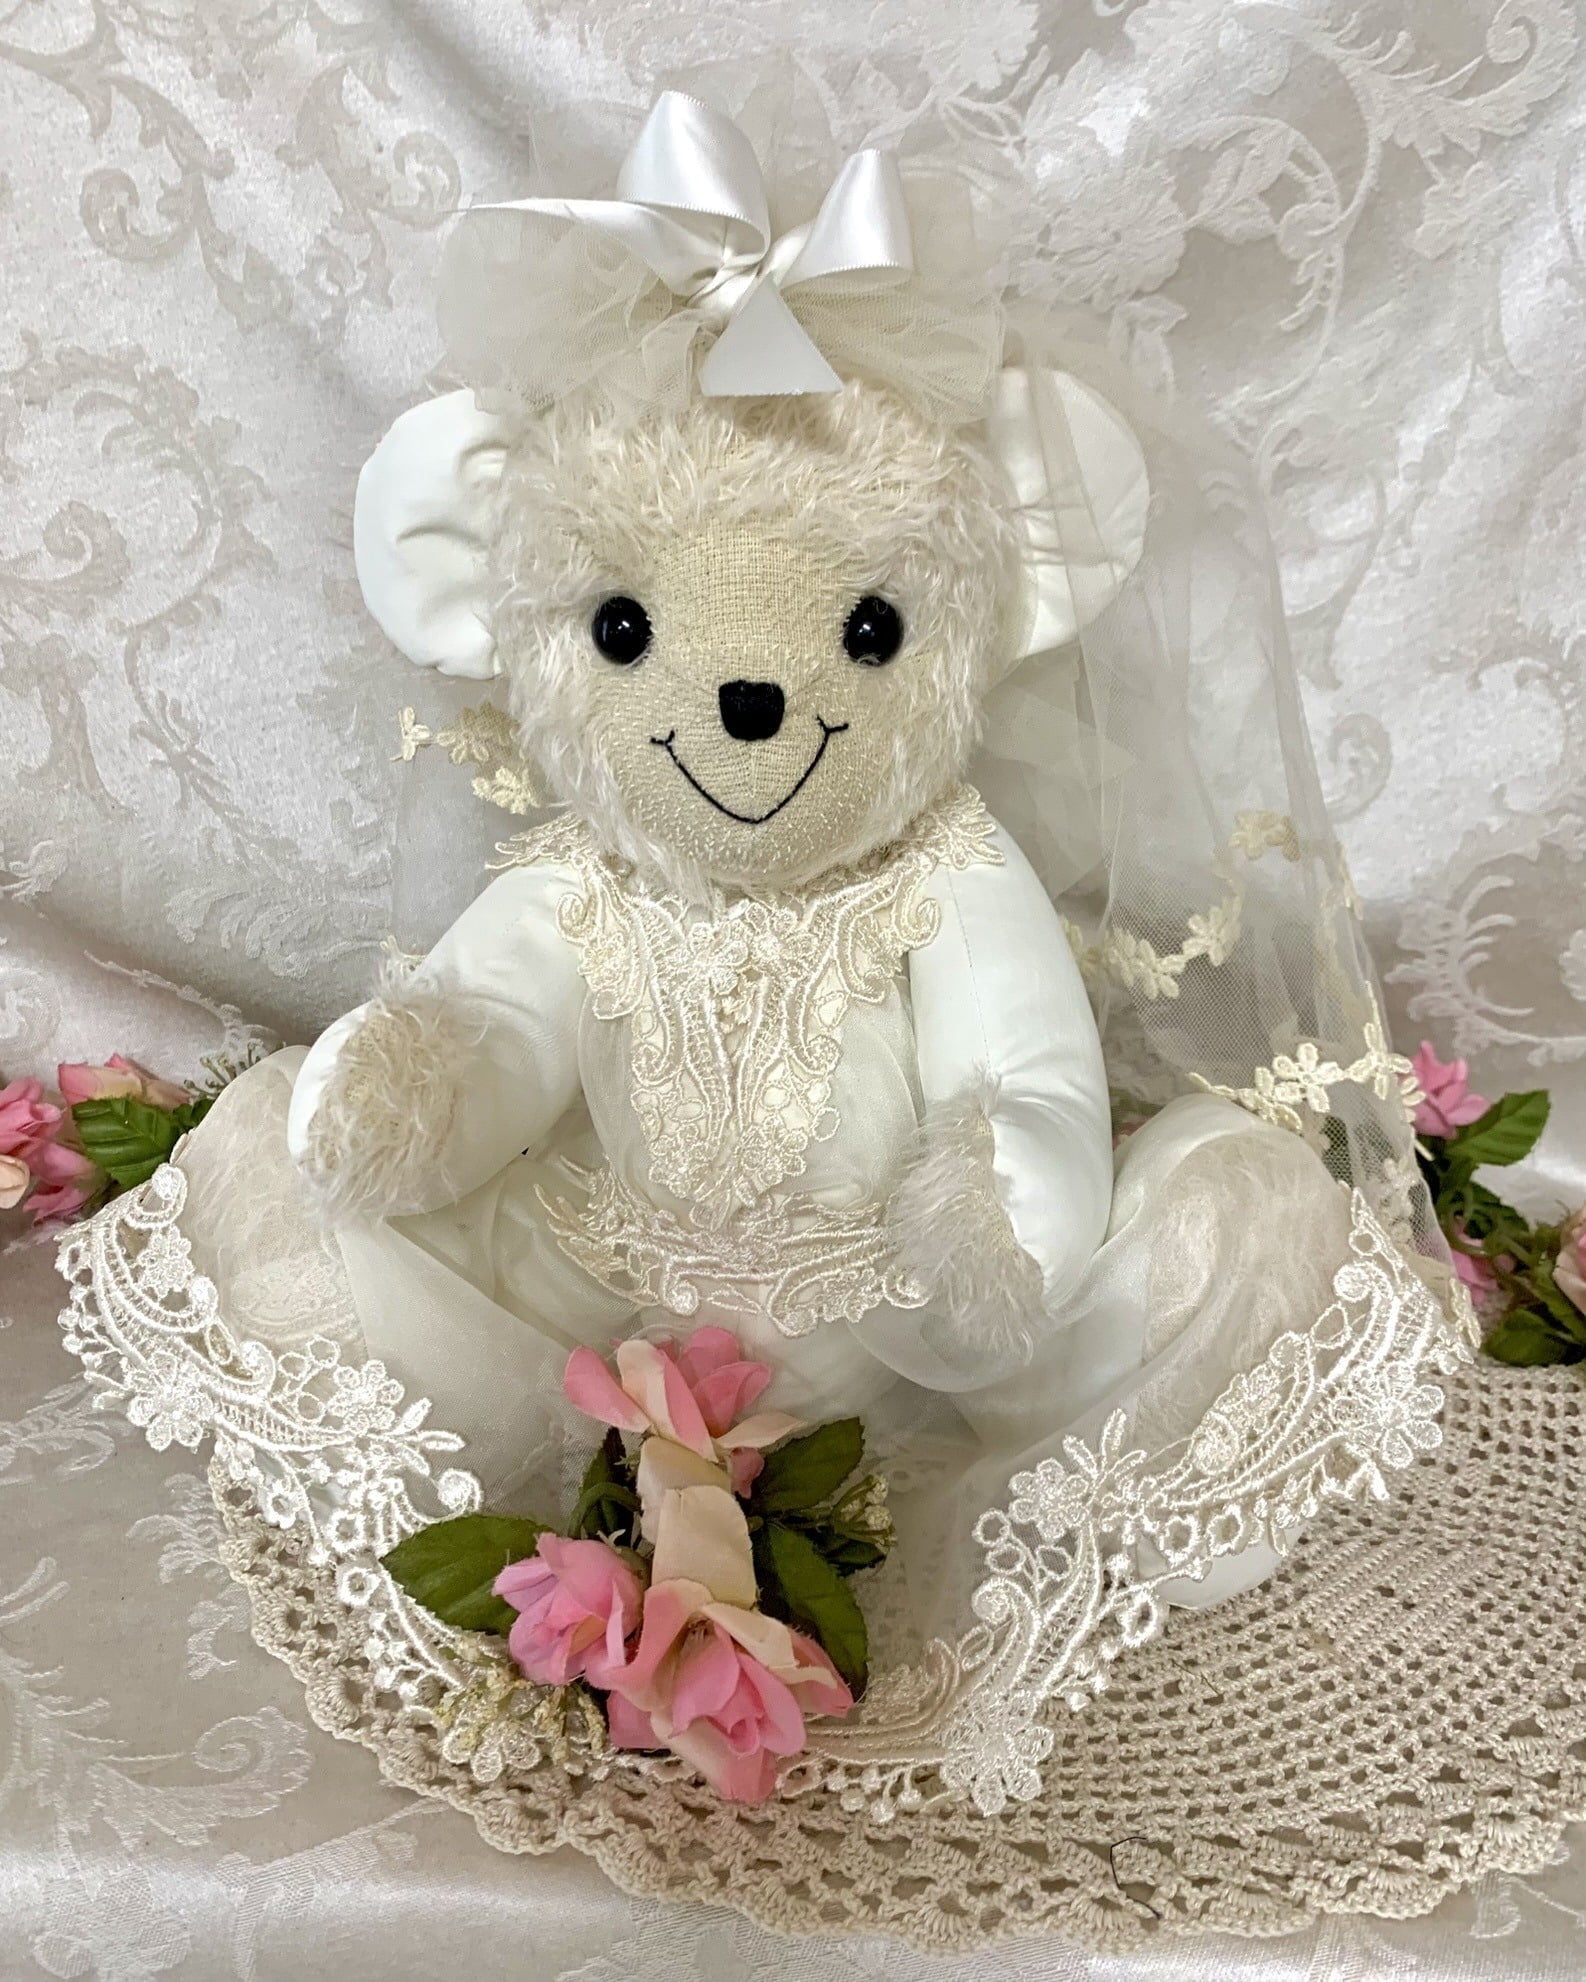 Keepsake bear made from wedding dress.